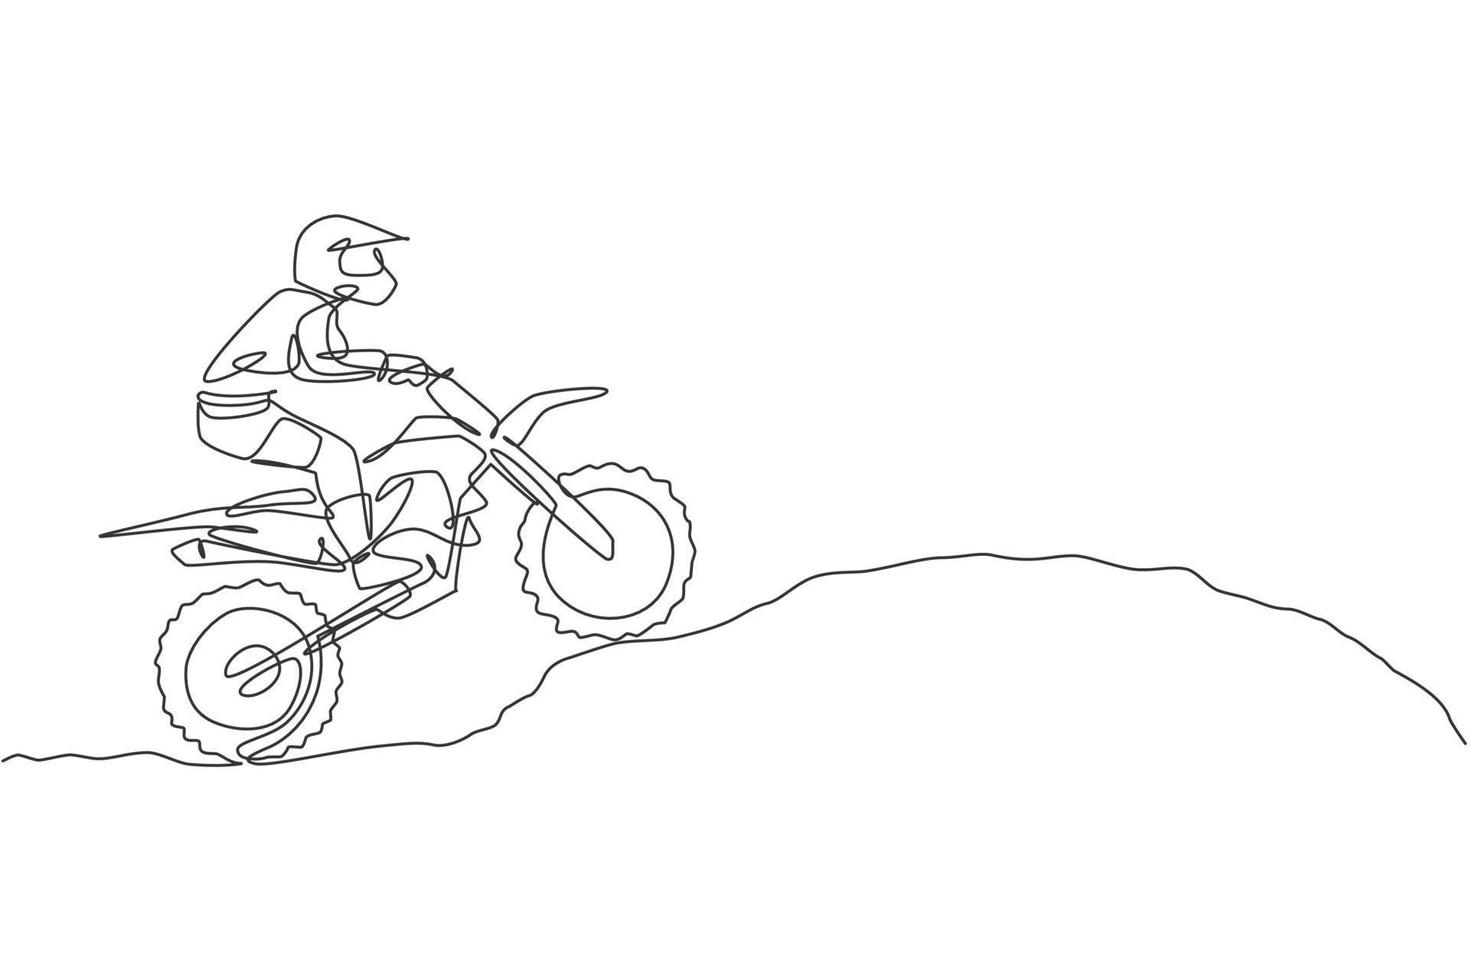 un dibujo de línea continua de un joven piloto de motocross escalar un montículo de tierra en la pista de carreras. concepto de deporte extremo. Ilustración de vector de diseño de dibujo de línea única dinámica para cartel de competición de motocross